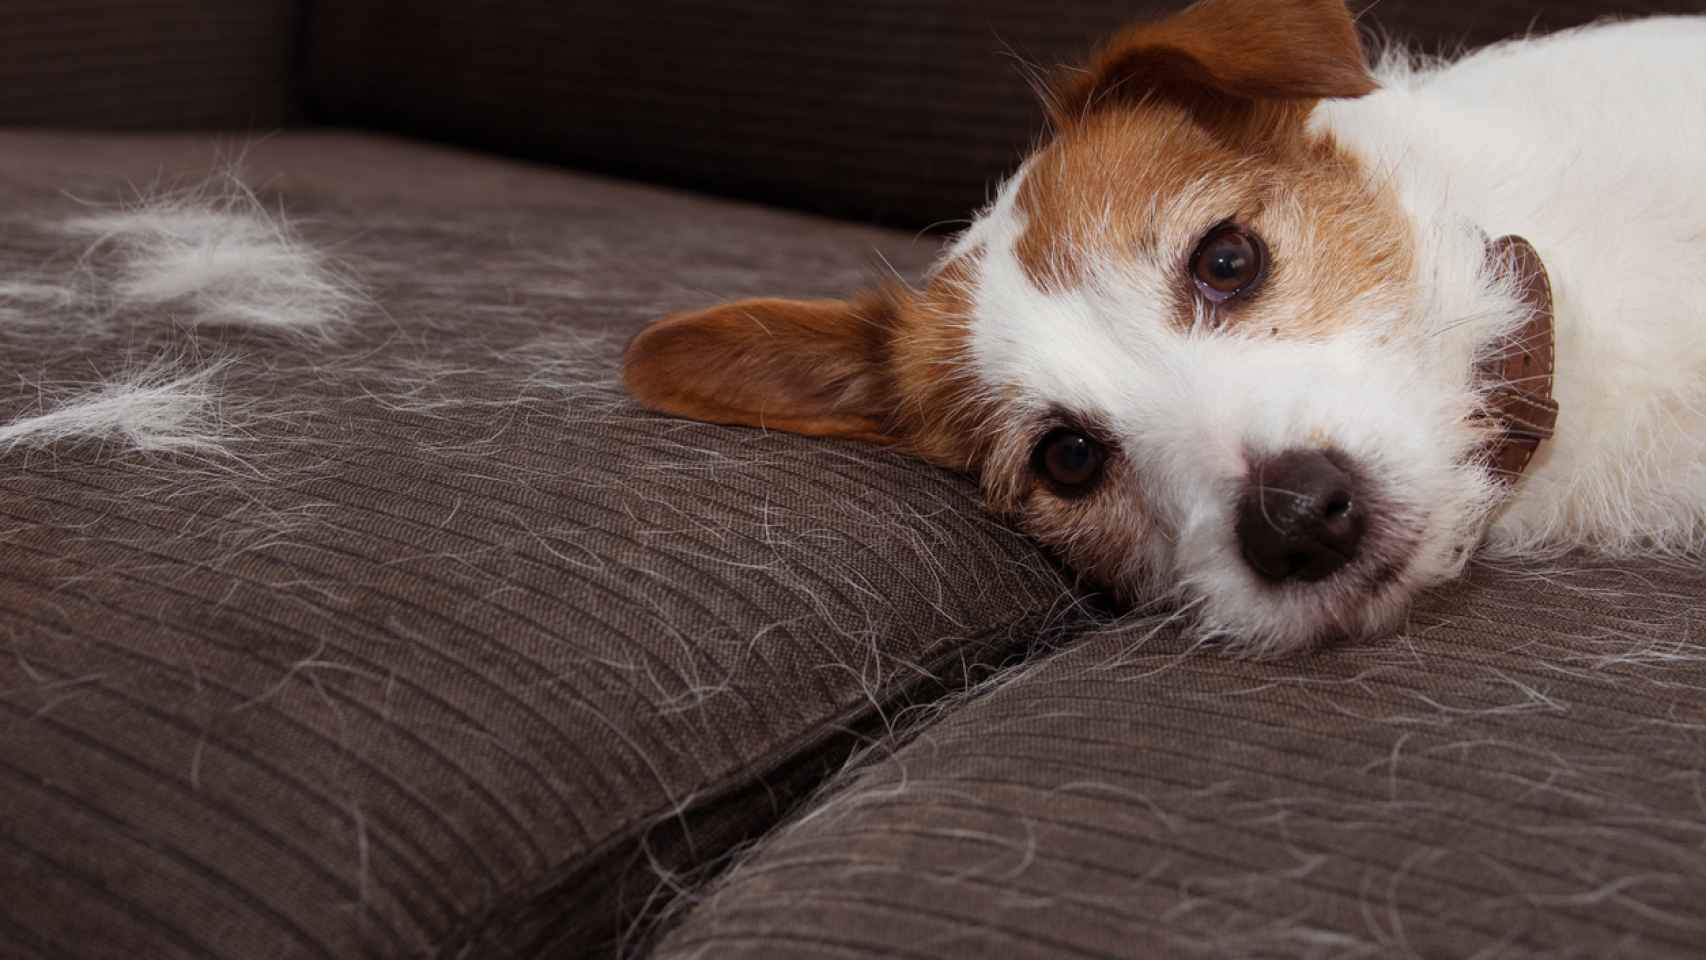 Ropa y sofás libres de los pelos de tu mascota con el rodillo